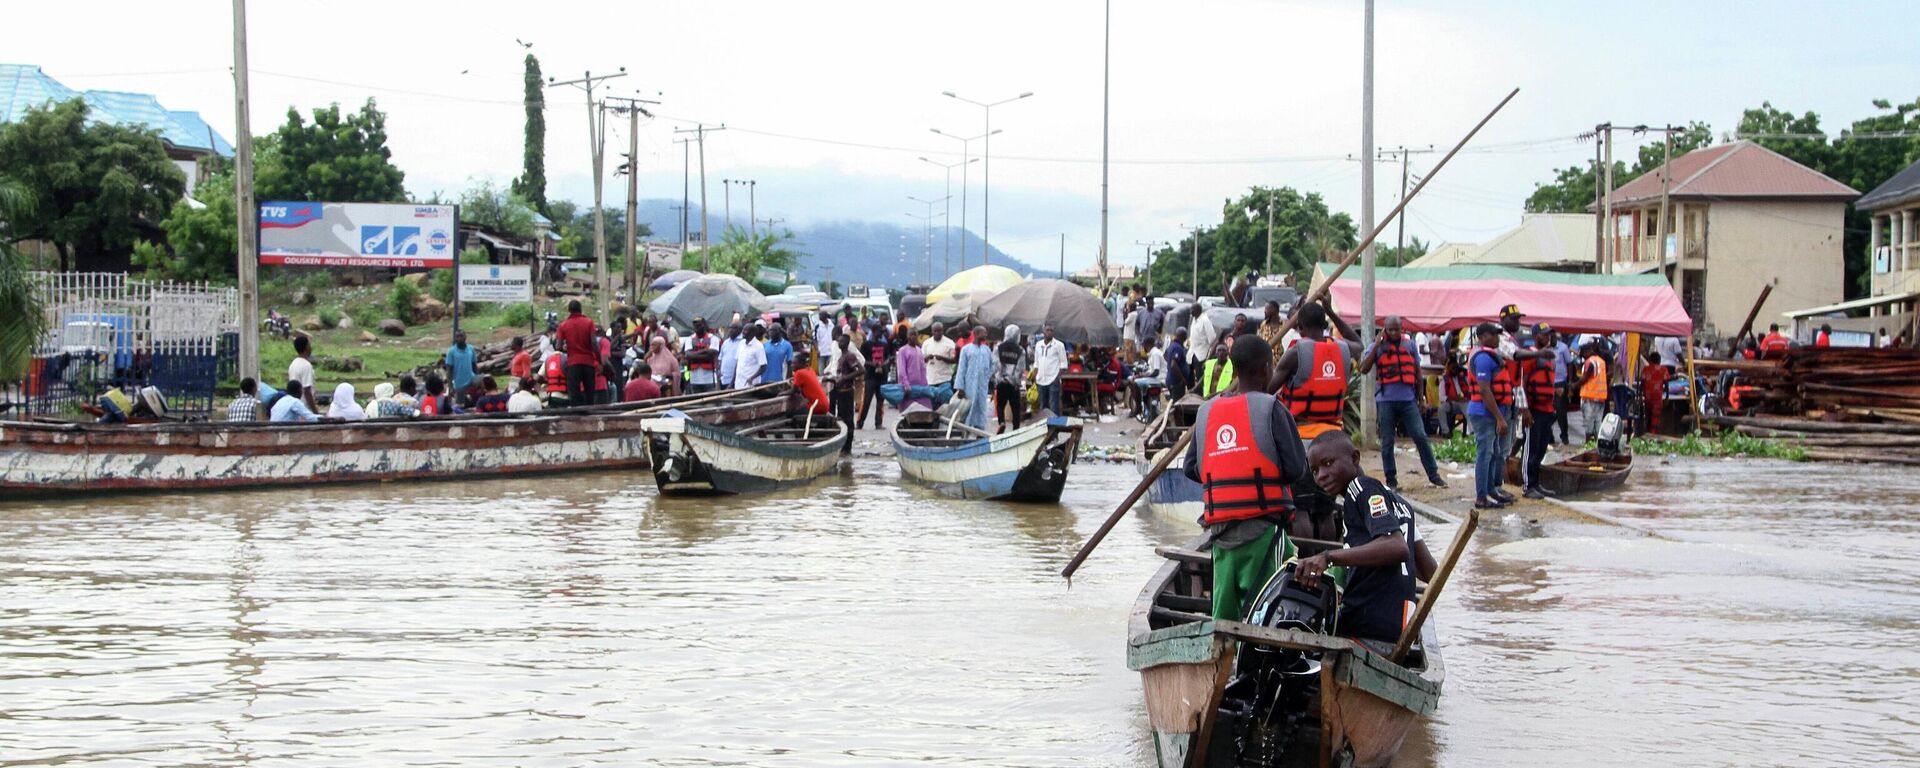 Equipes resgatam moradores que ficaram isolados com as enchentes que afetam a Nigéria. Kogi, 6 de outubro de 2022 - Sputnik Brasil, 1920, 09.10.2022